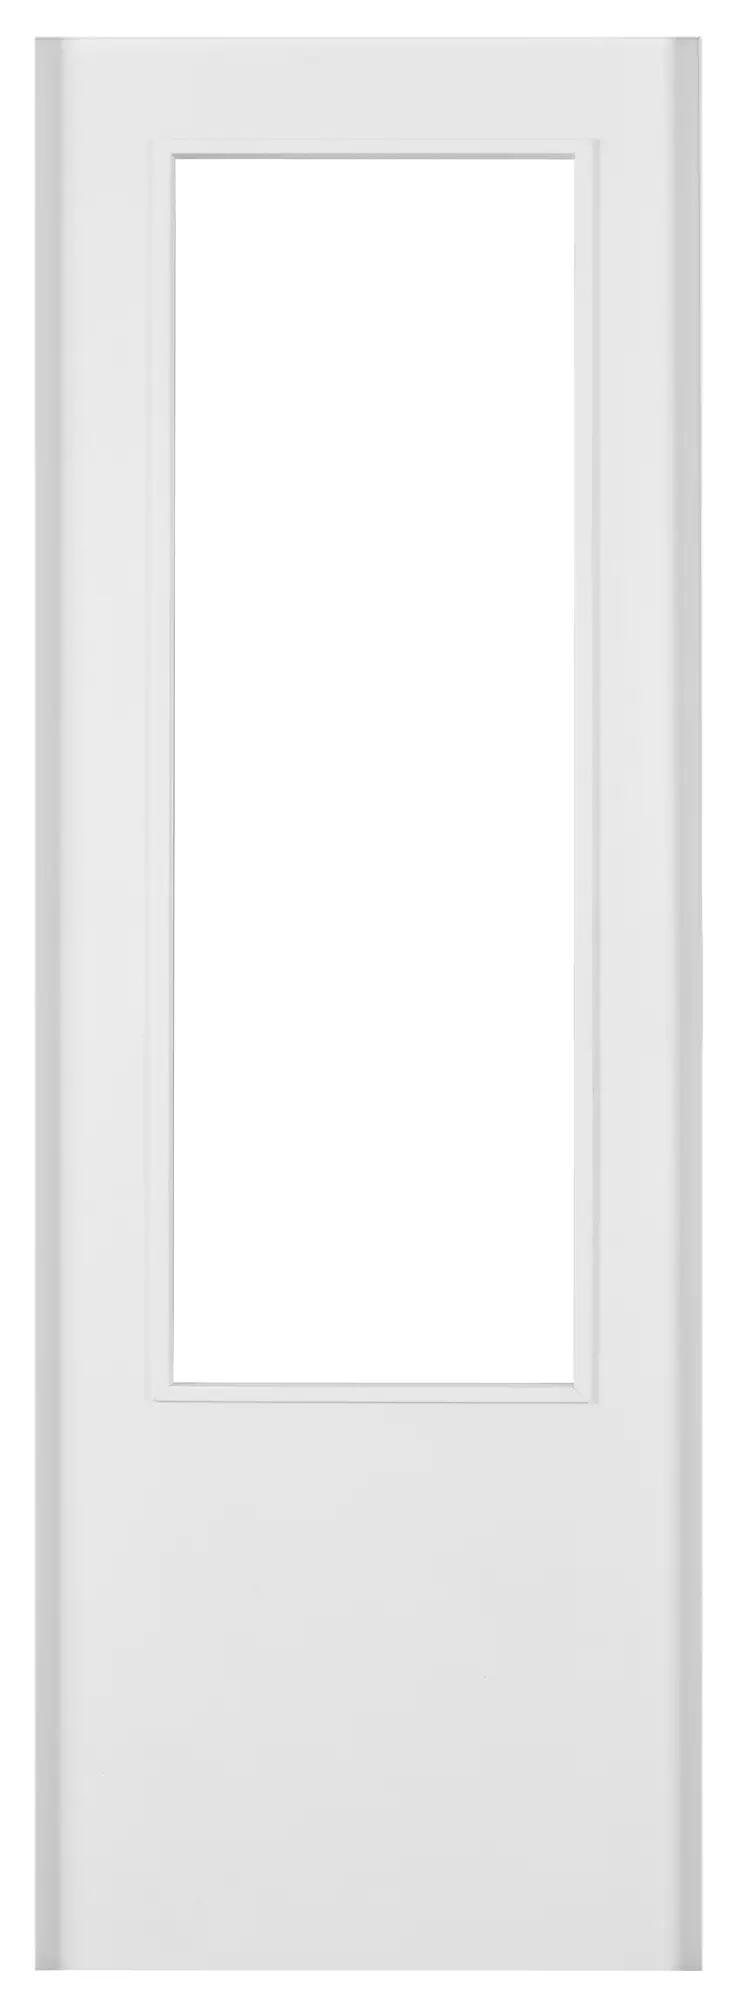 Puerta corredera con cristal lyon blanco de 72.5 cm